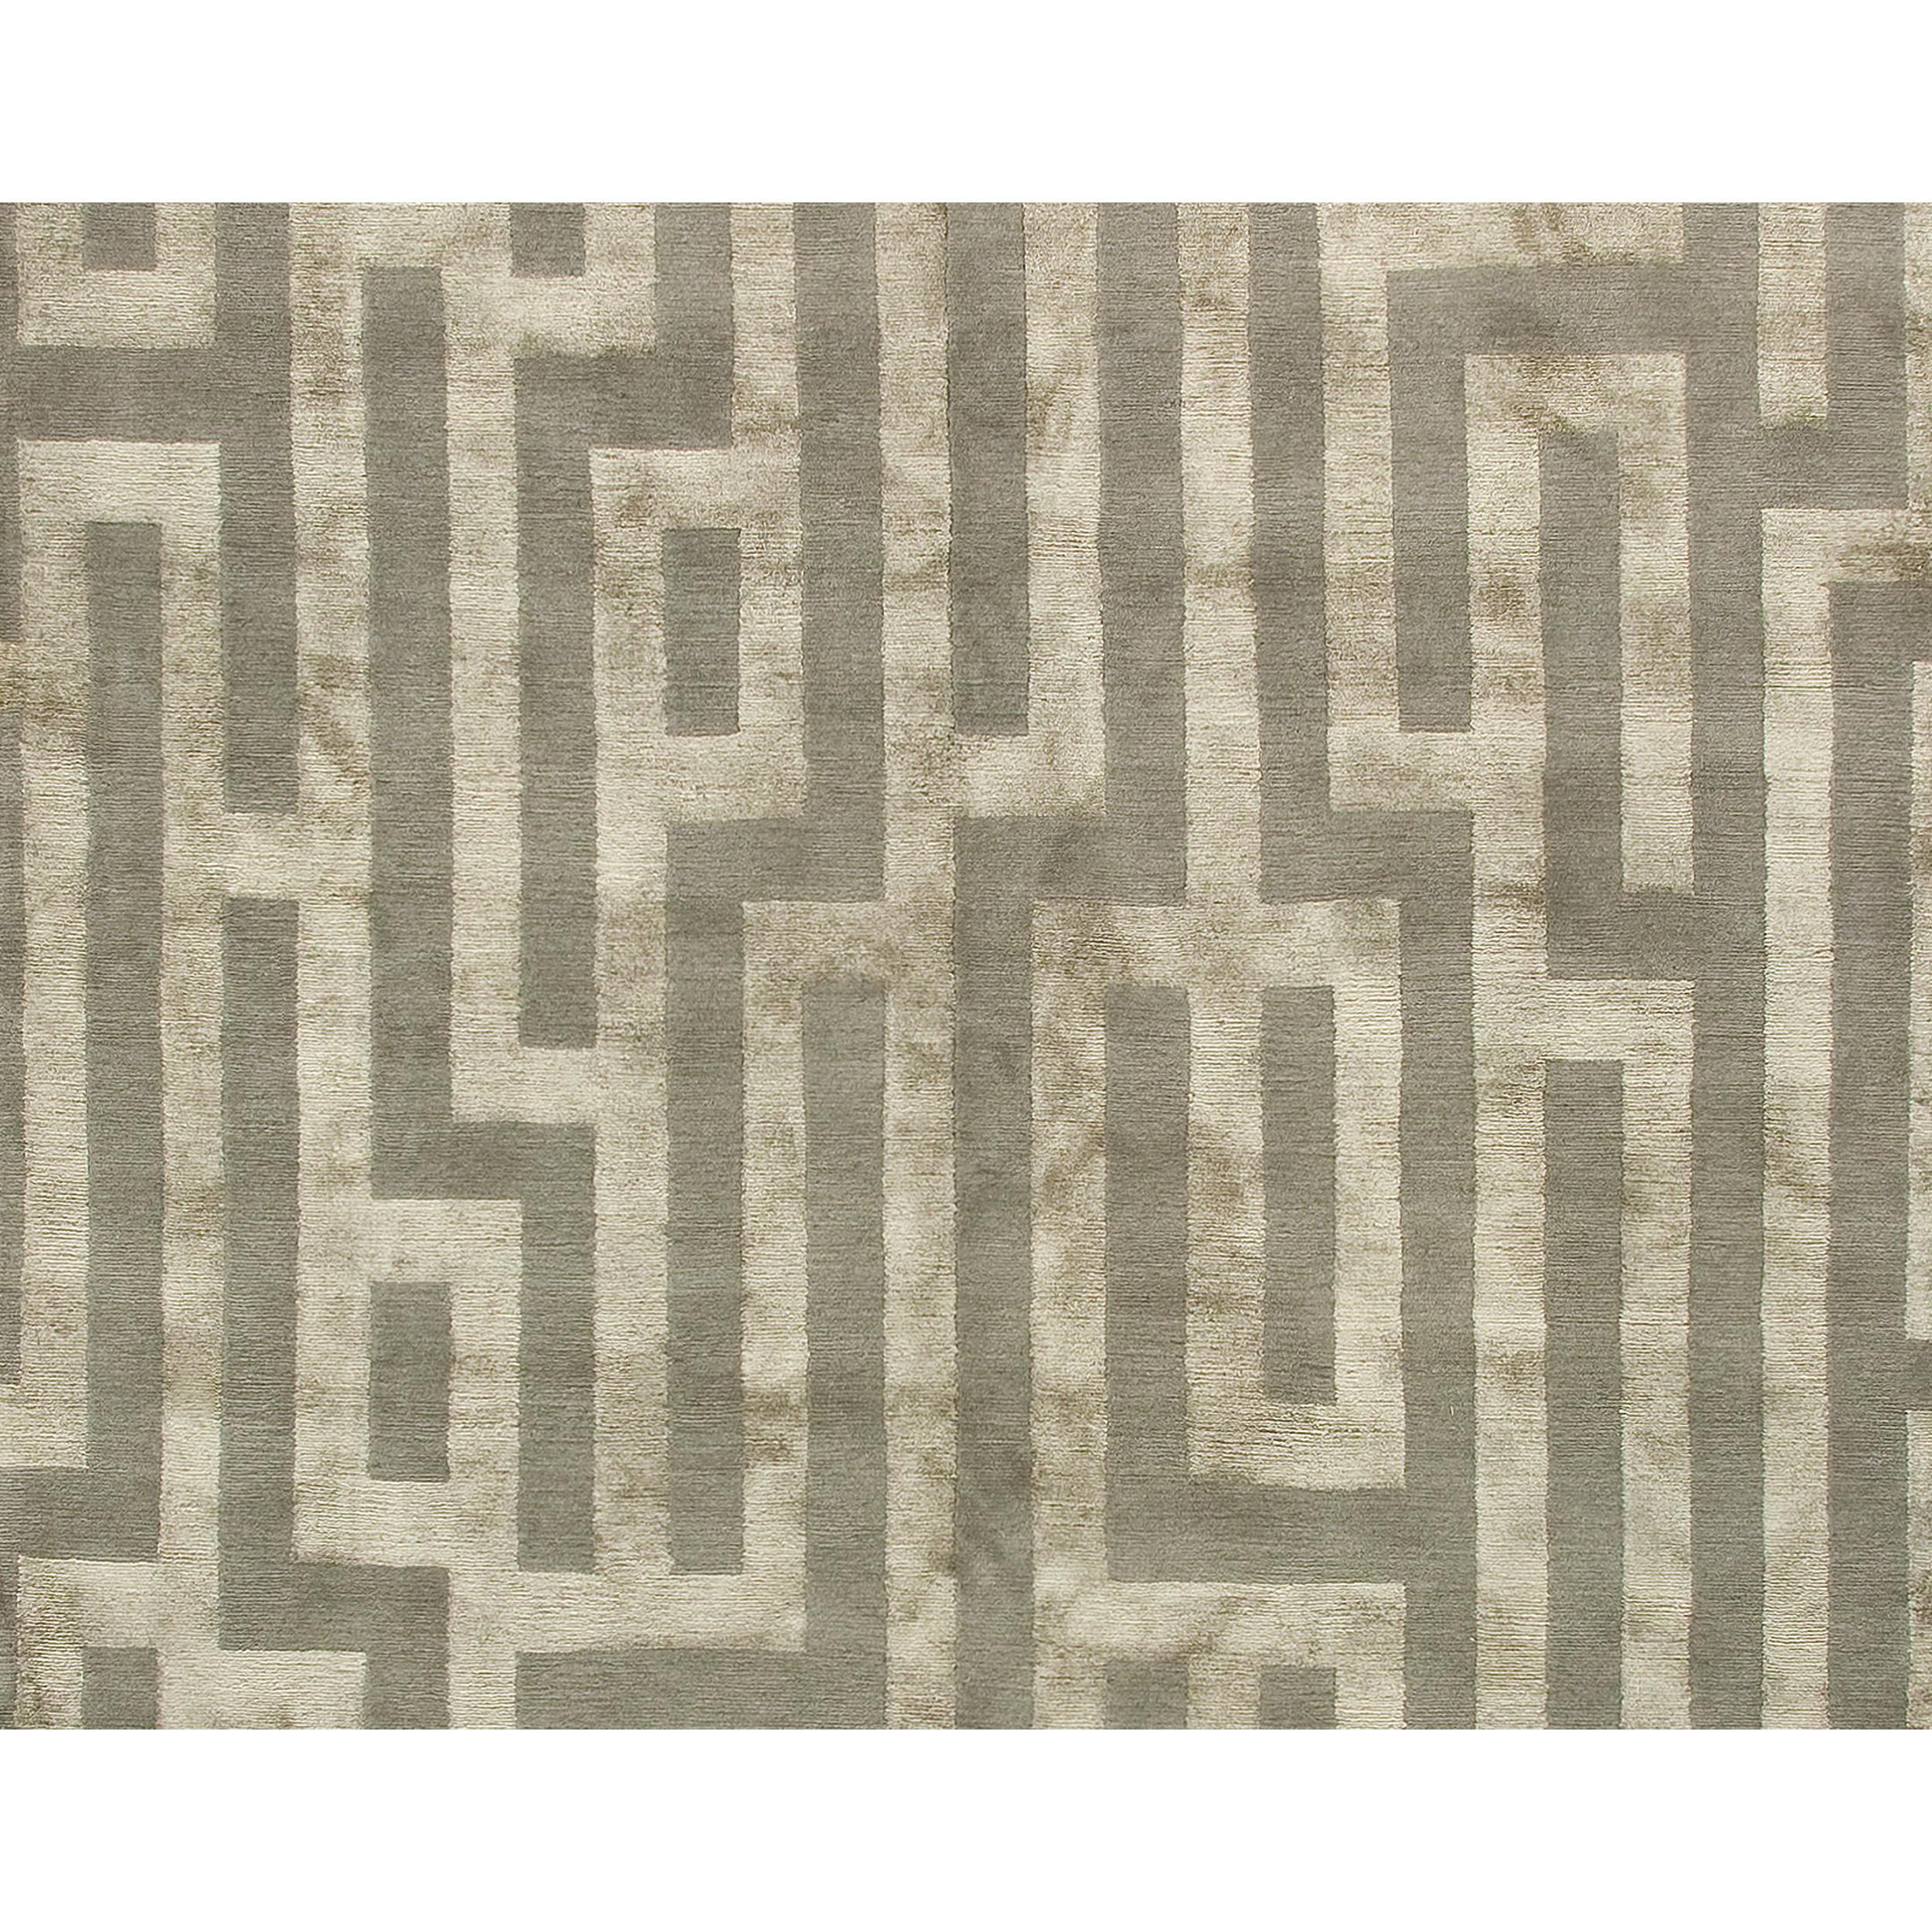 Dieser luxuriöse, moderne Teppich wurde in Nepal sorgfältig handgeknüpft. Die harmonische Kombination aus Seide und edler Wolle ist weich, strapazierfähig und von natürlicher Wärme, was sie zu einem idealen Partner für Seide macht und ihr einen